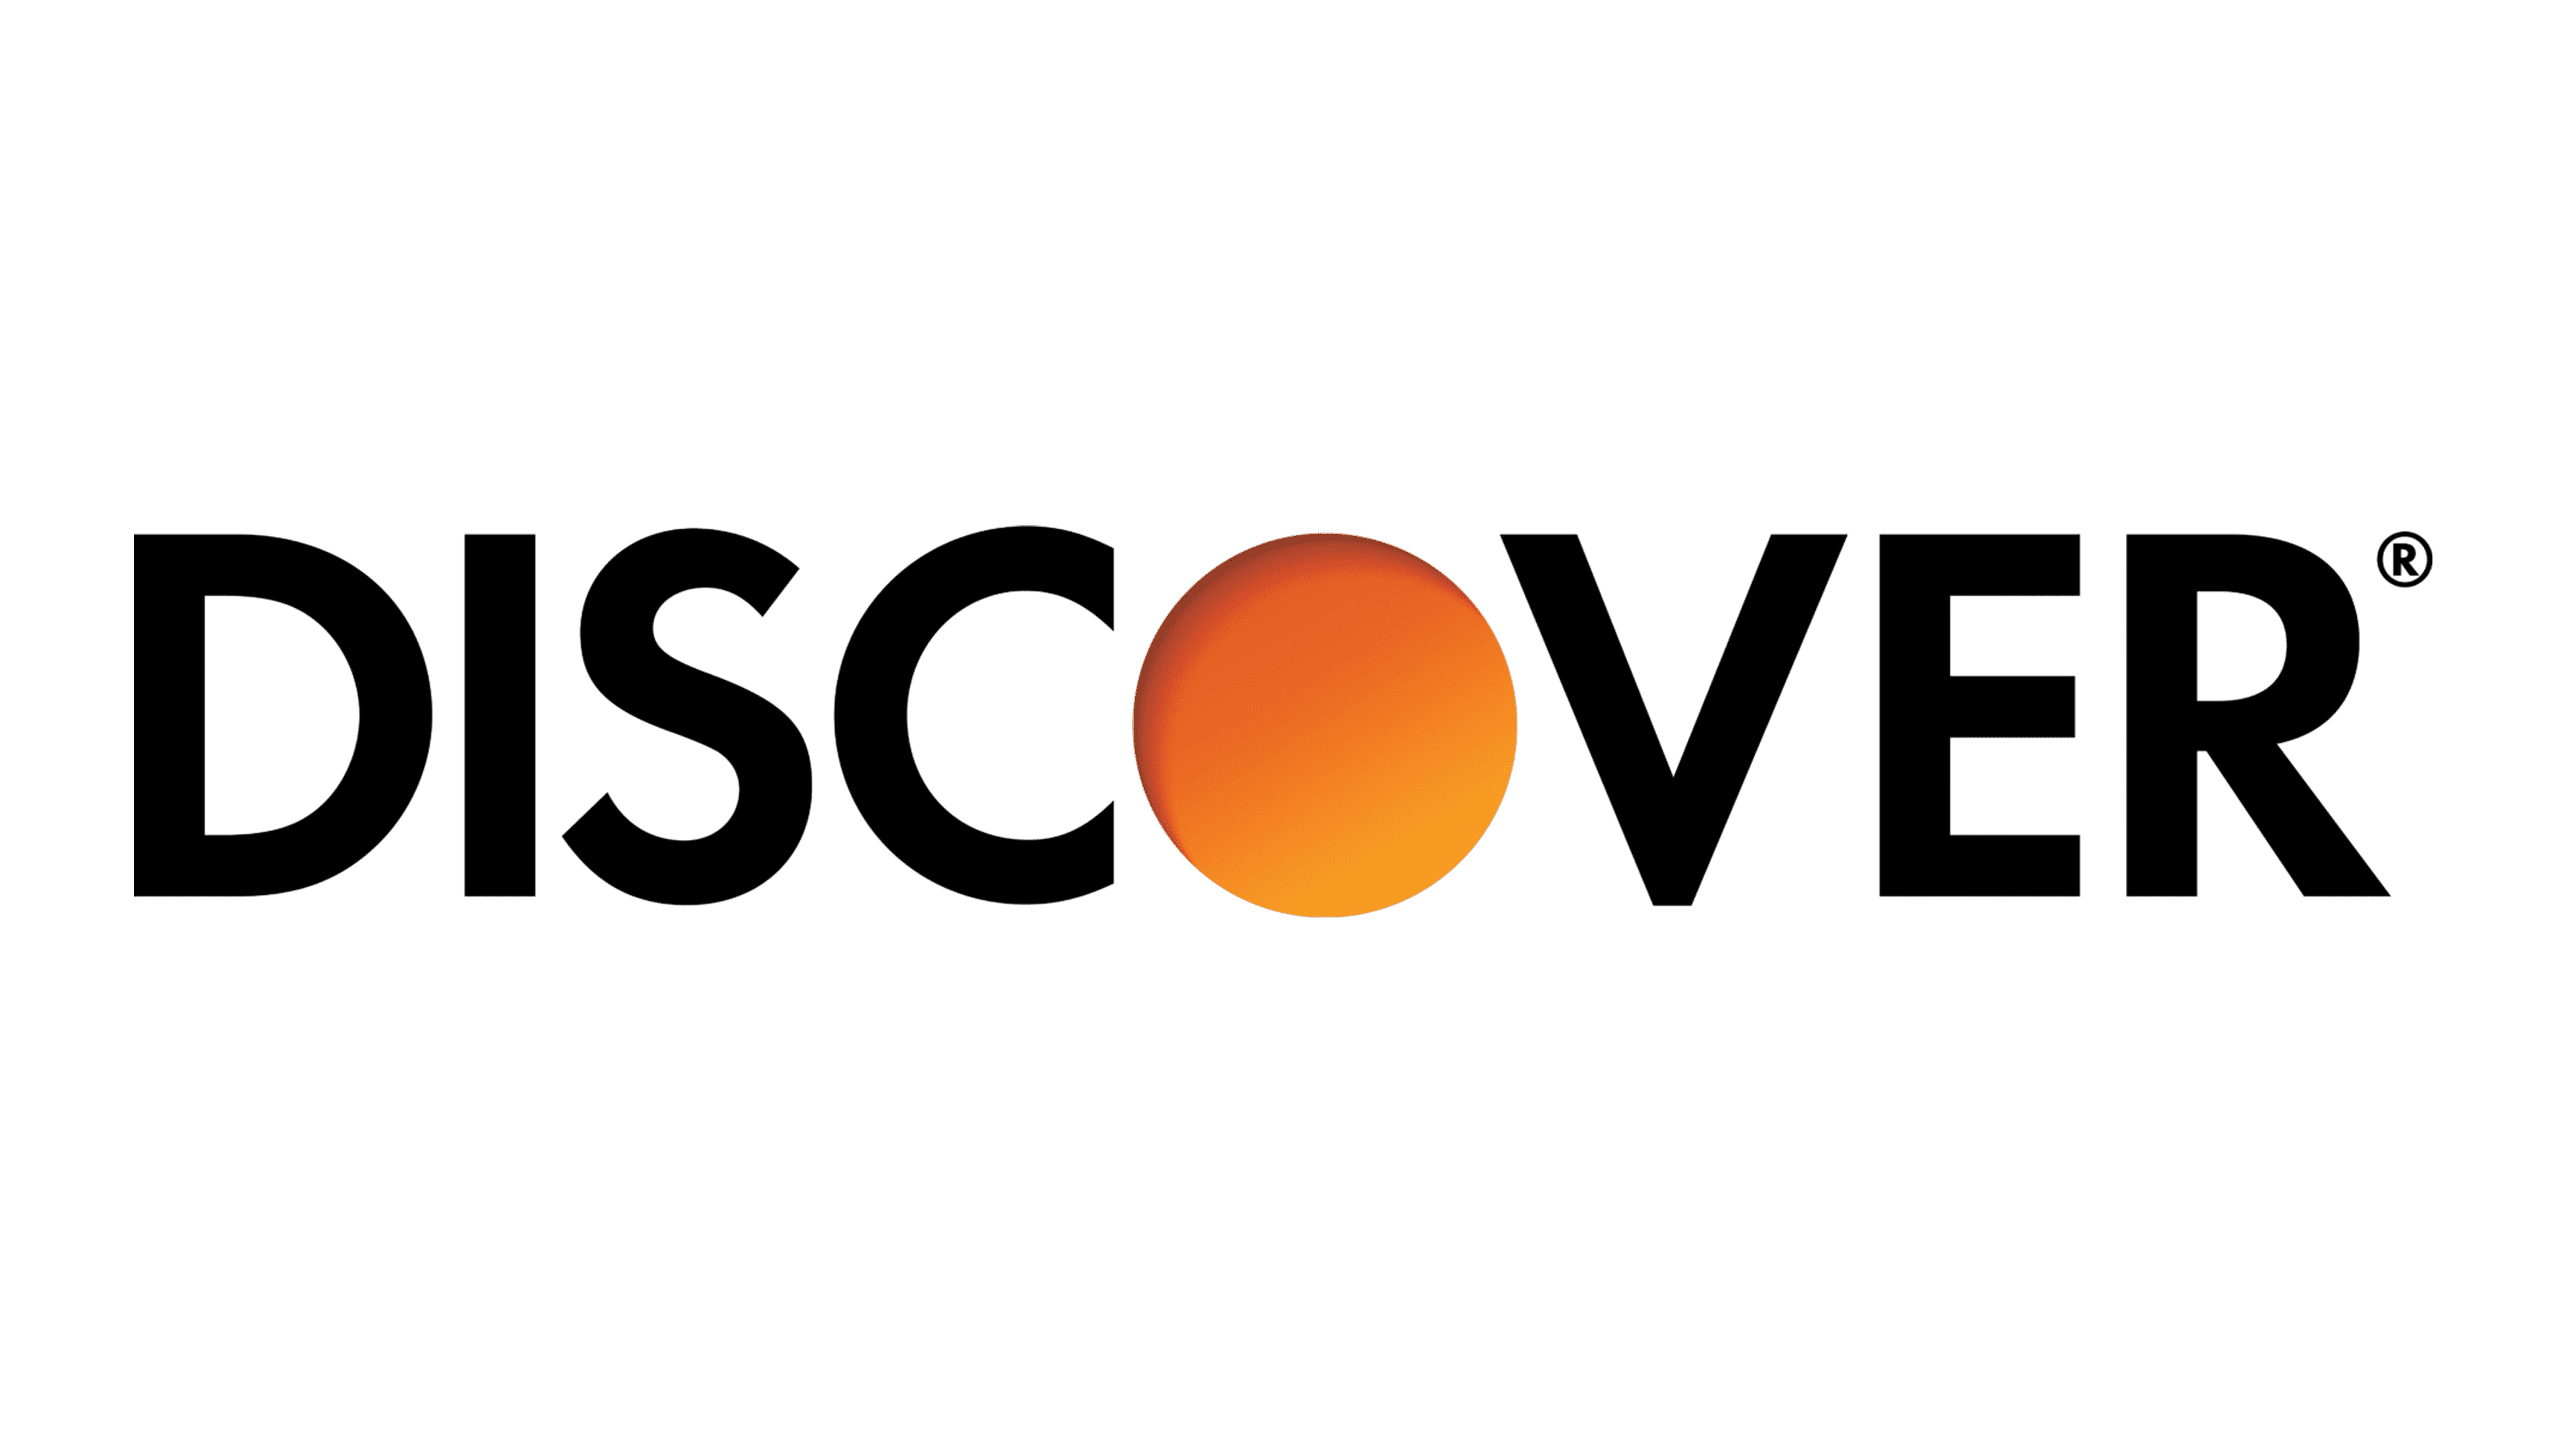 Discover-logo